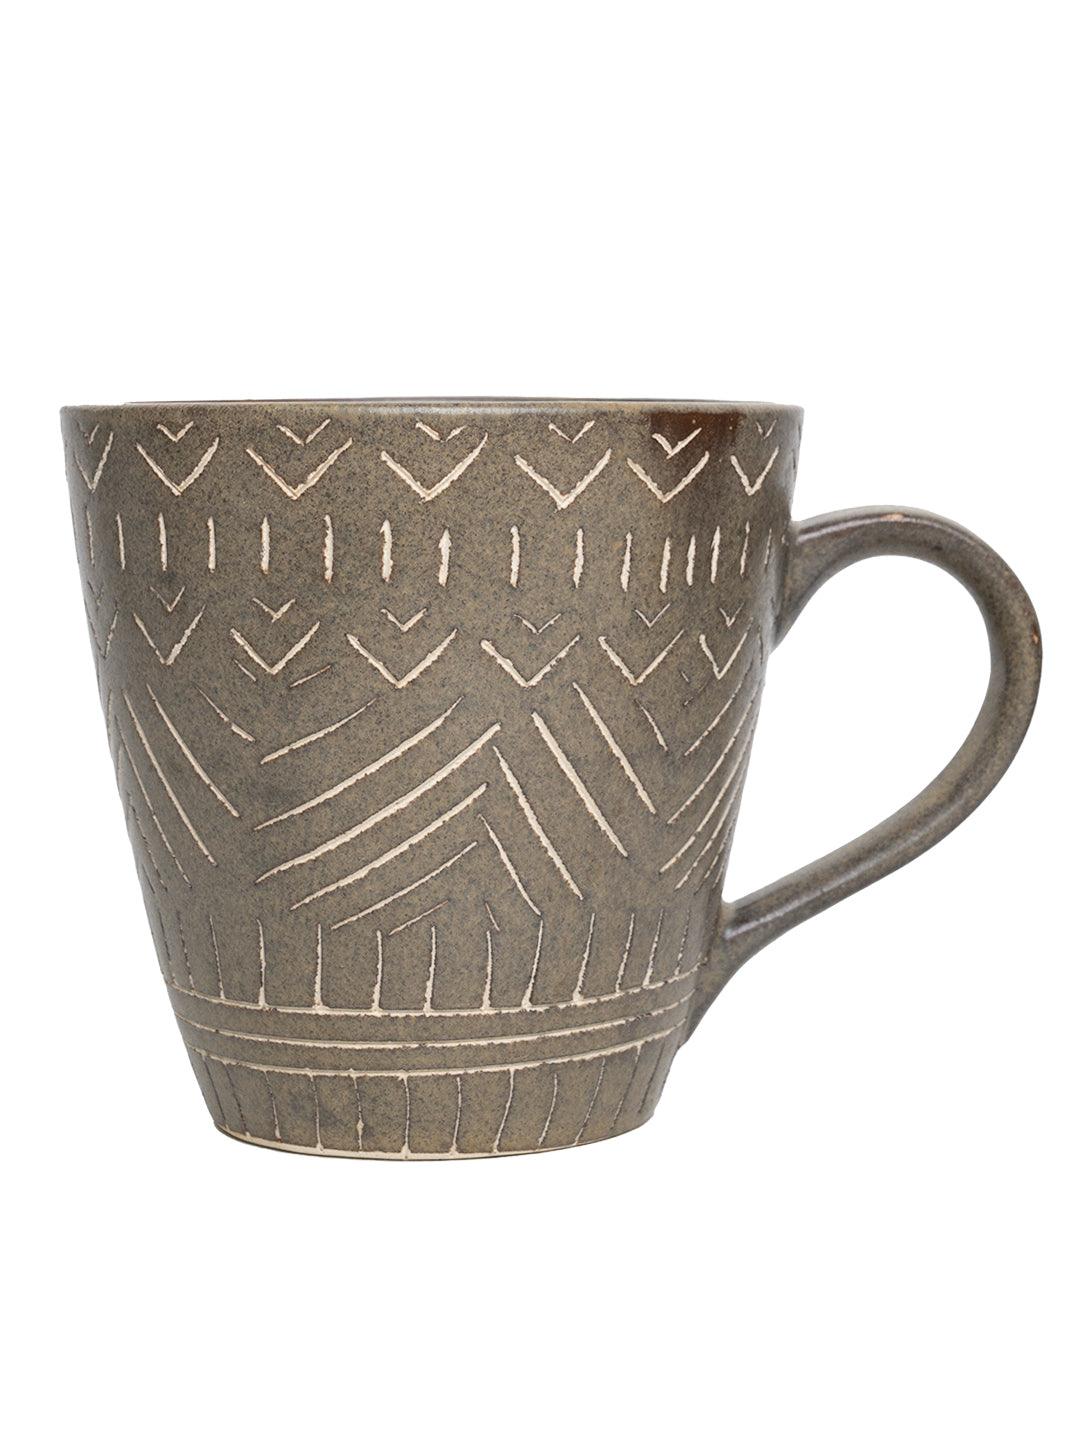 VON CASA Ceramic Coffee Mug - 320 Ml, Brown & Engrabed - MARKET 99